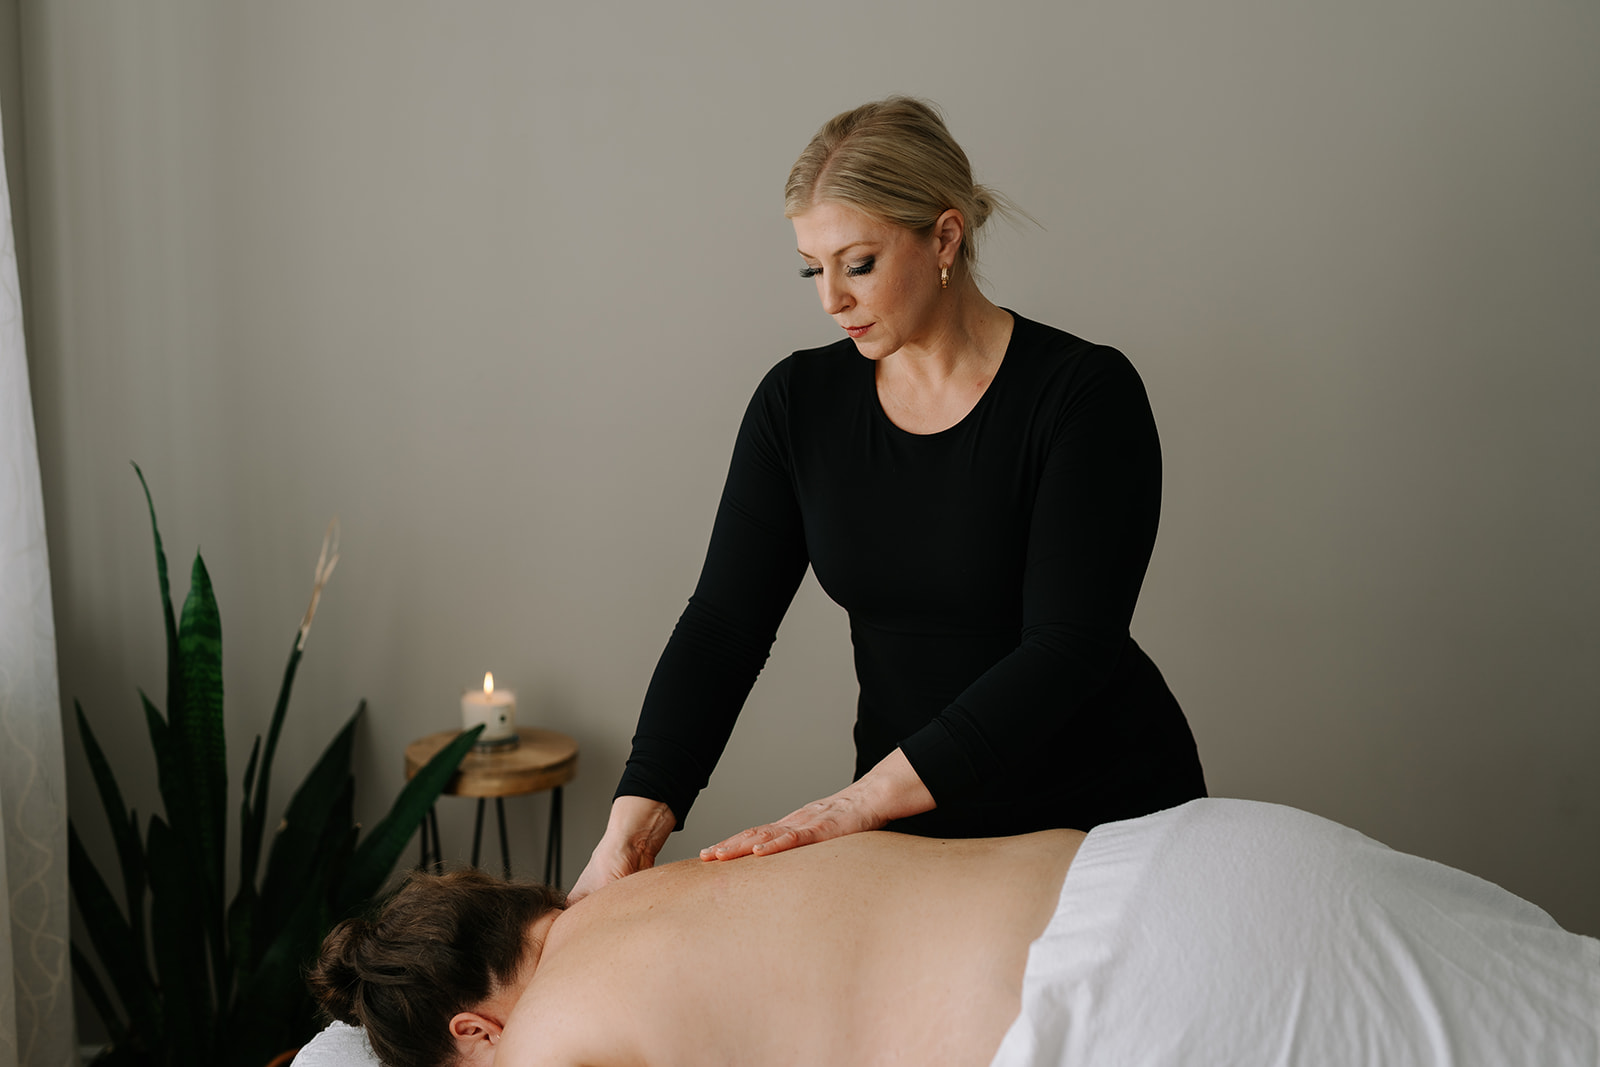 massage therapist giving a back massage